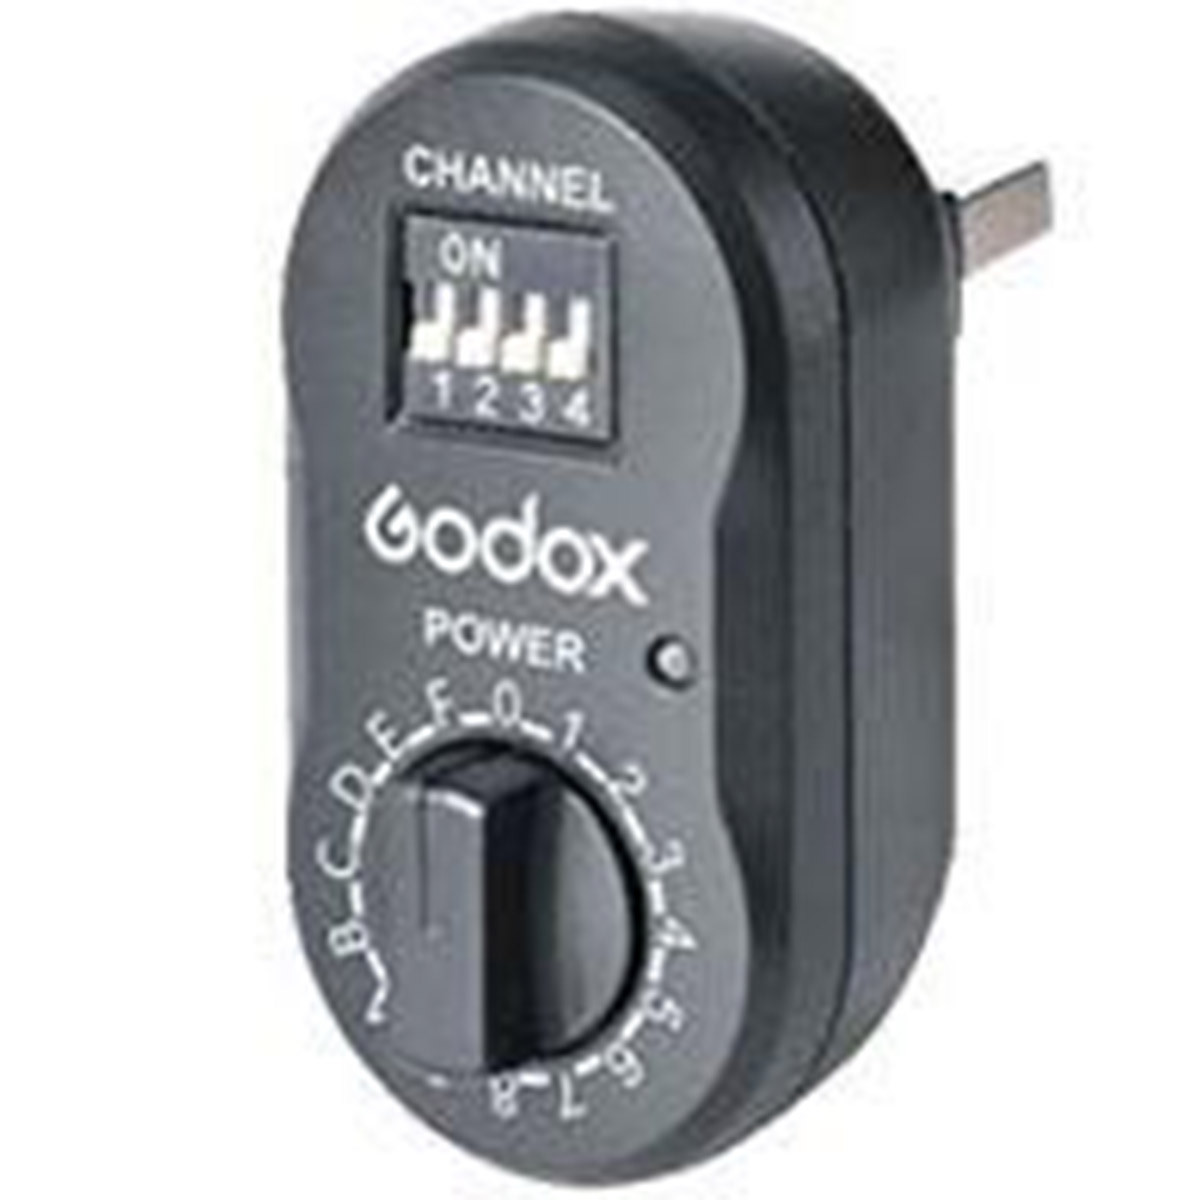 Télécommande photo,Godox – émetteur + récepteur de déclencheur de